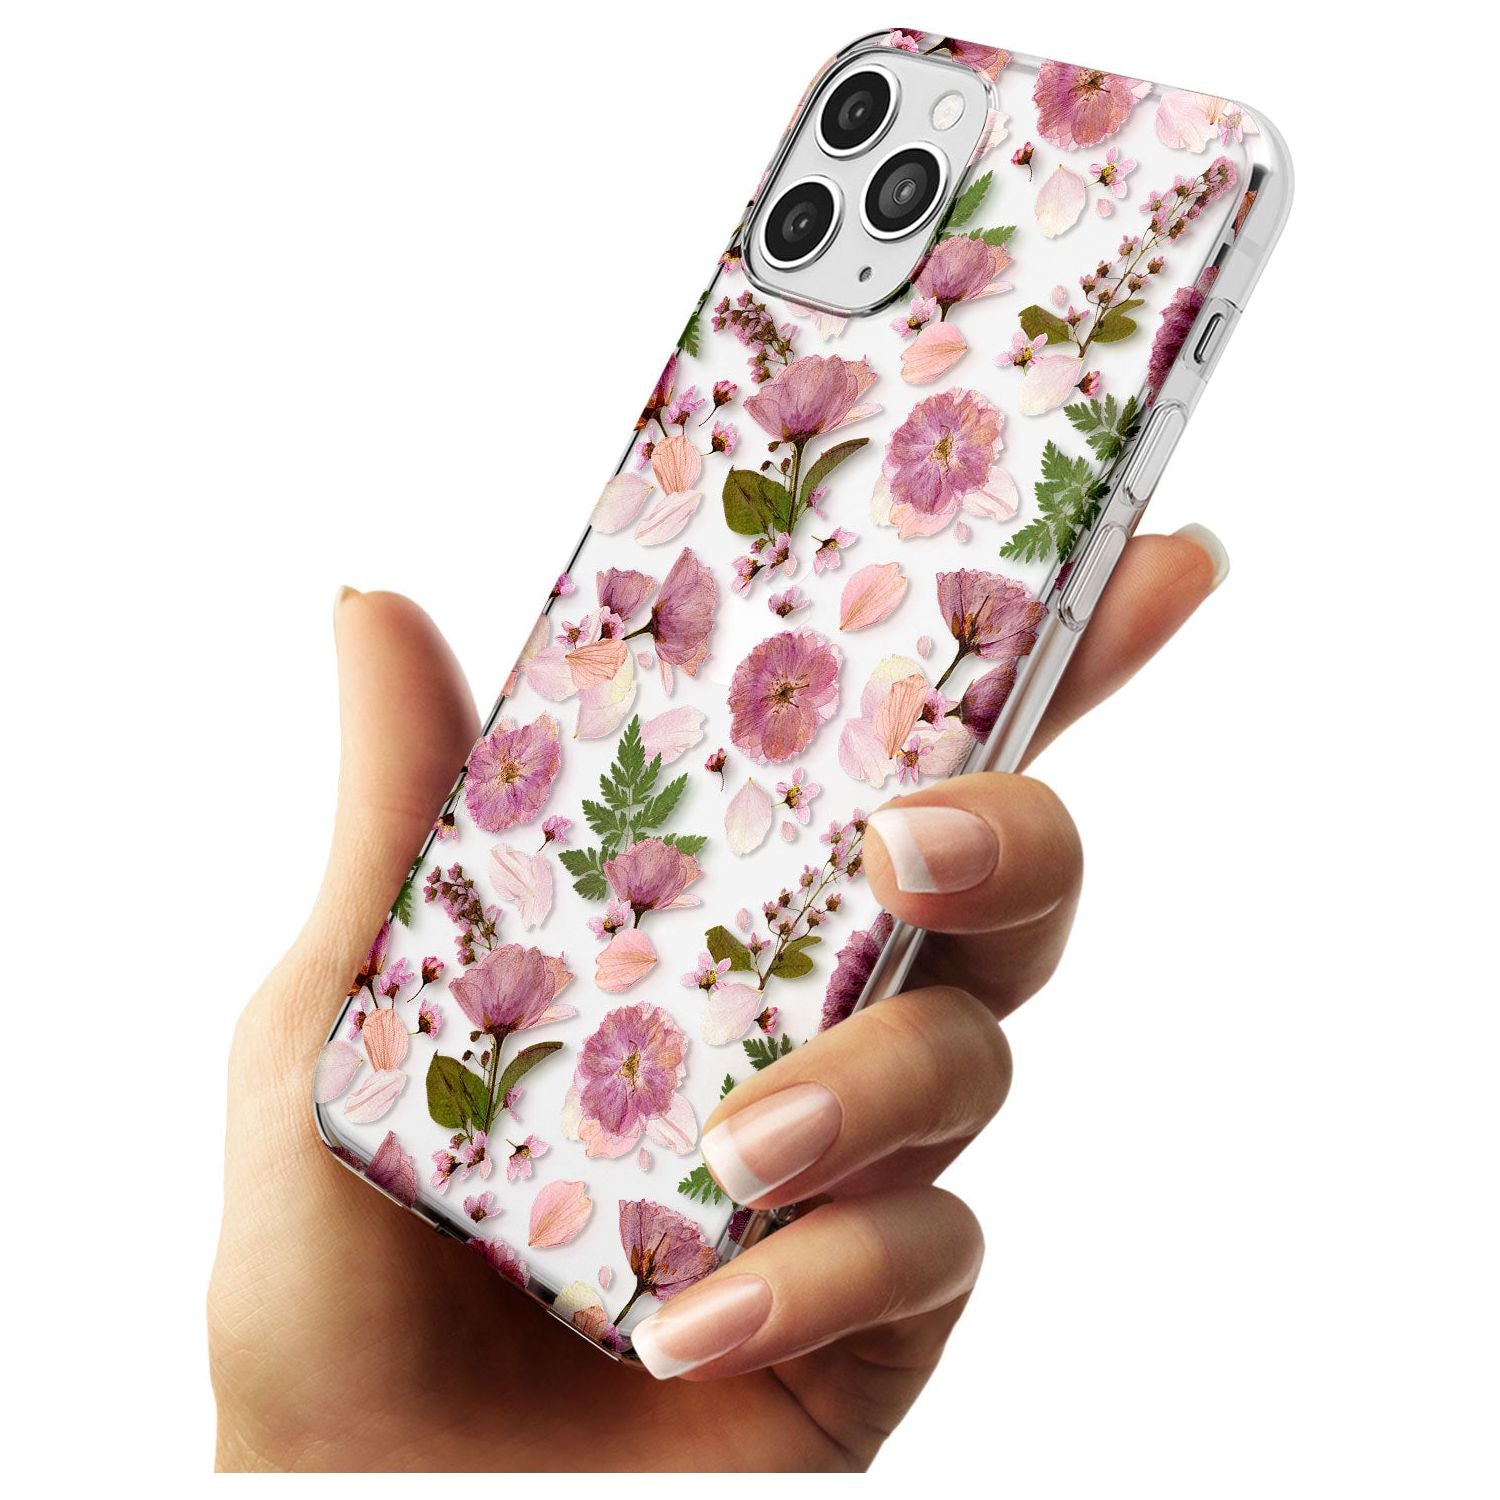 Floral Menagerie Transparent Design Slim TPU Phone Case for iPhone 11 Pro Max